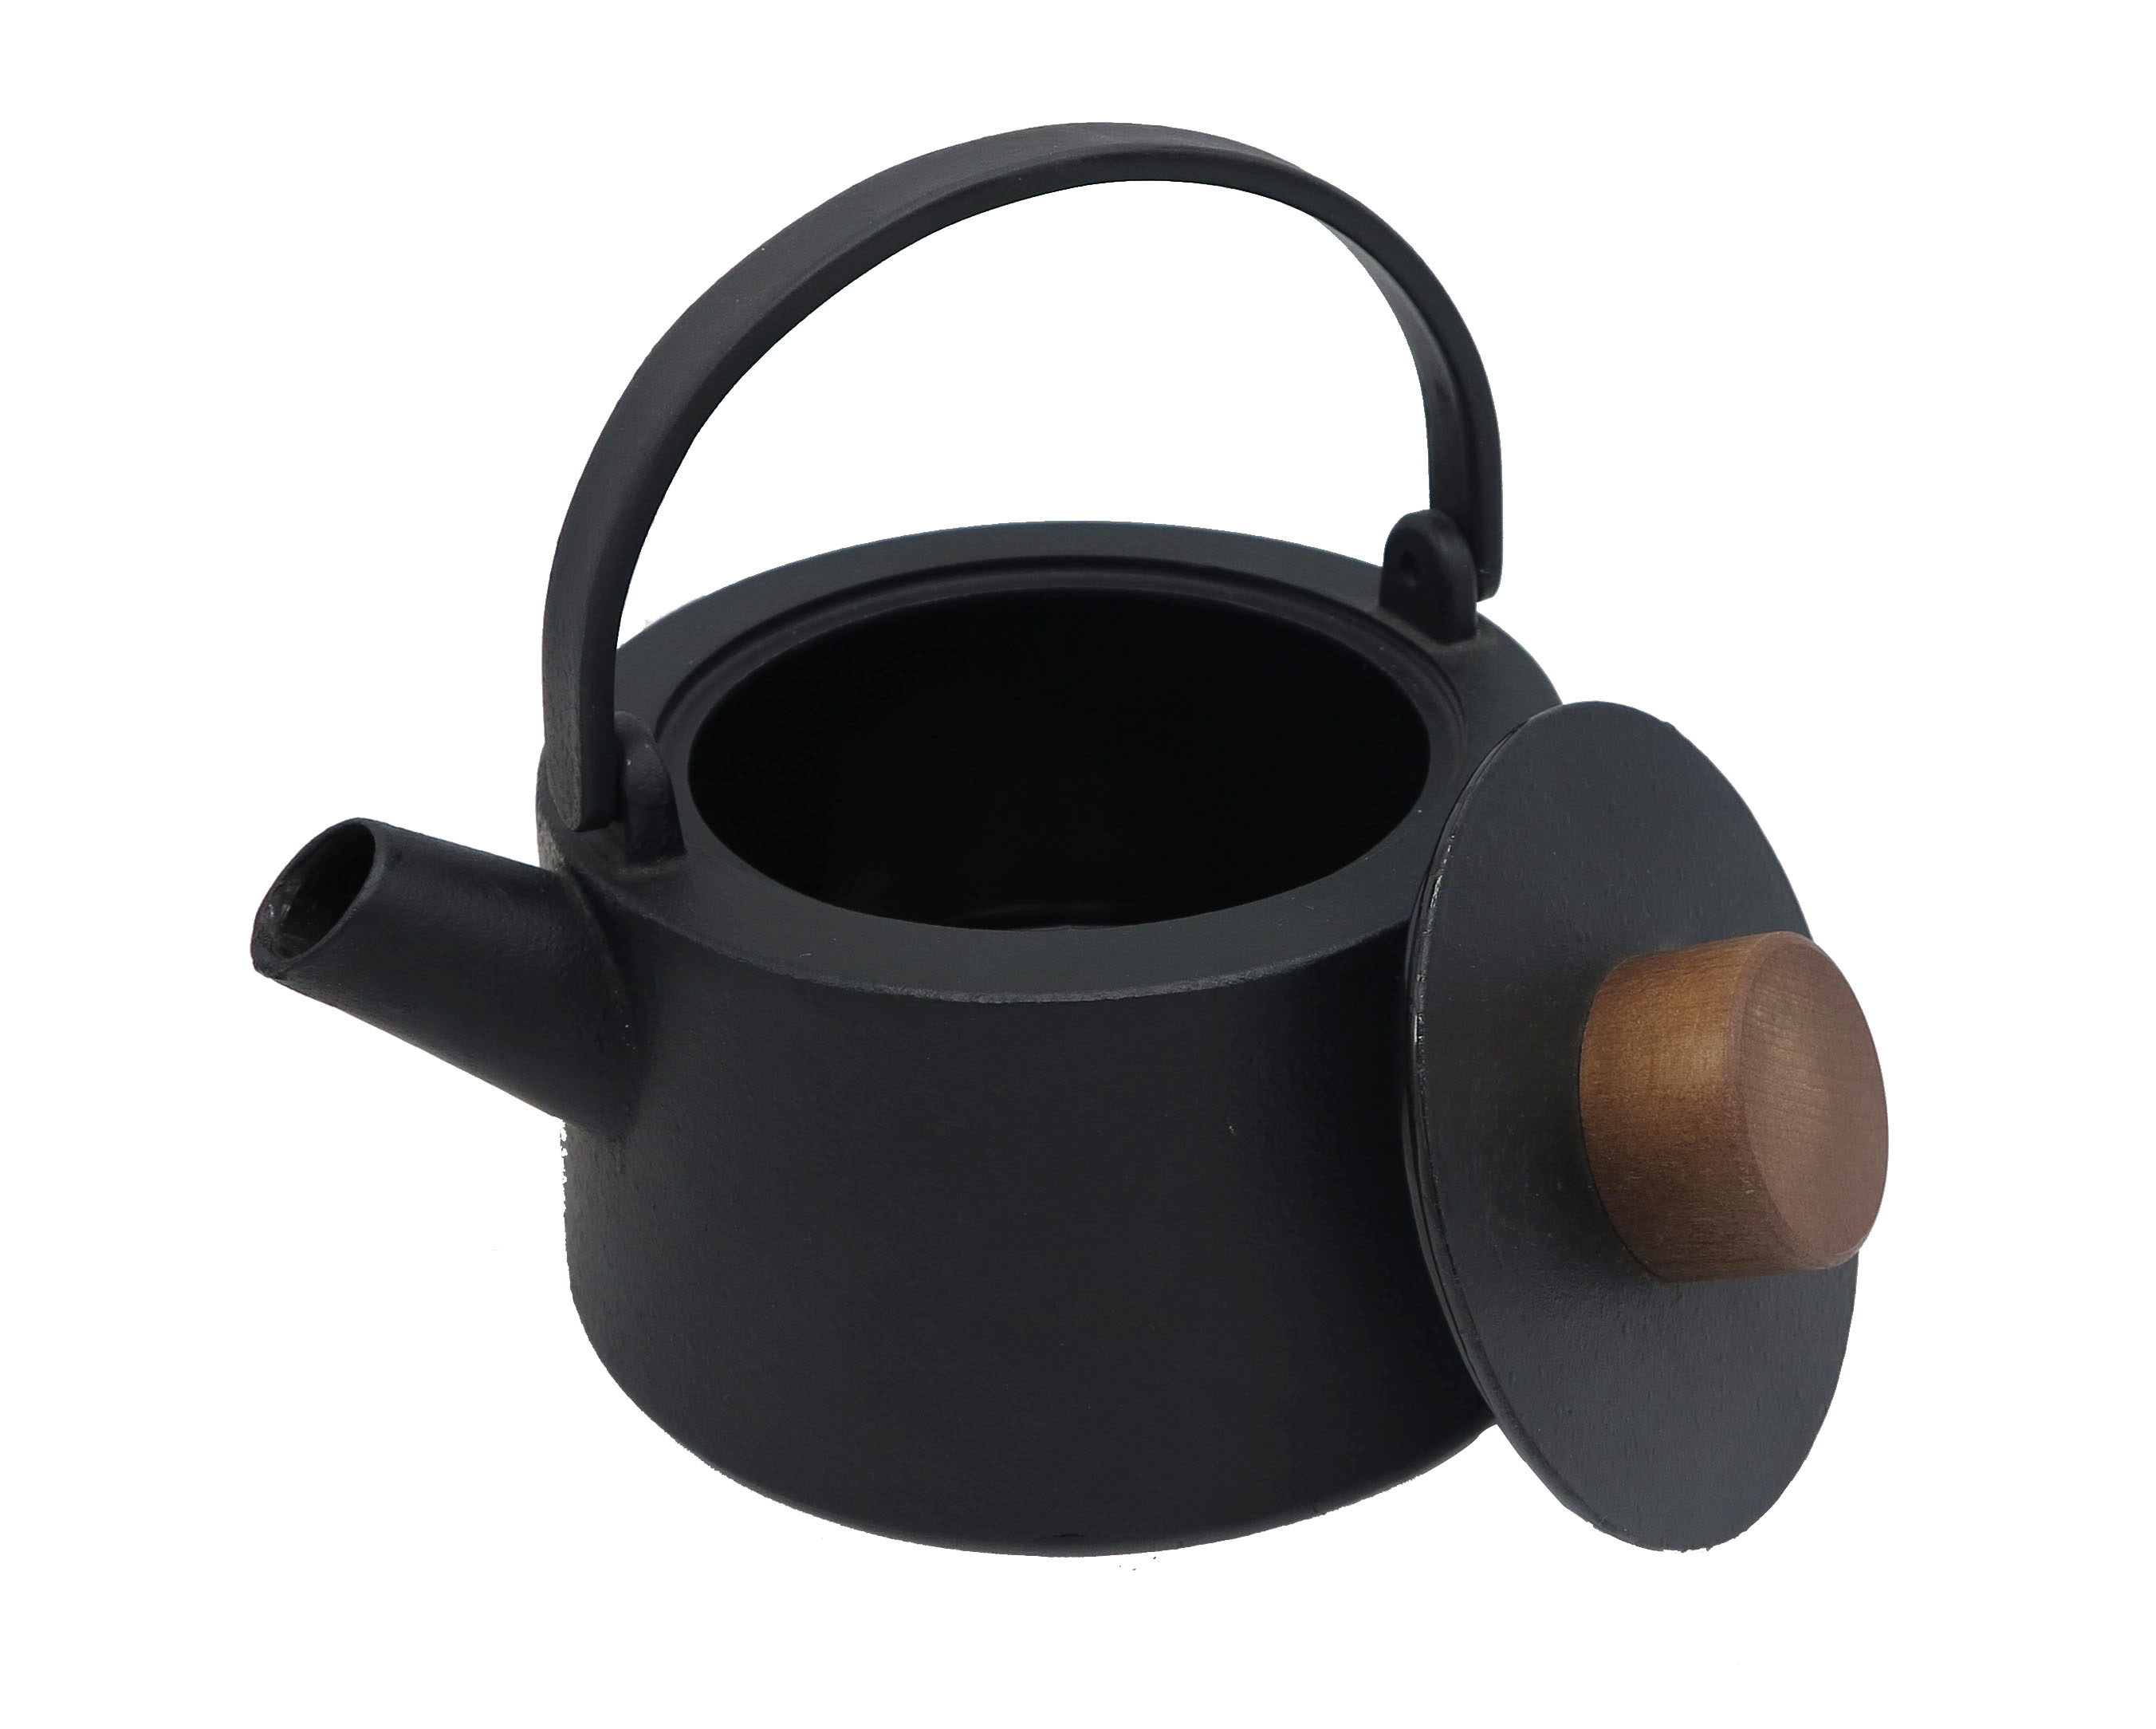 Hideung Cast Iron tea Ketel 1100ml gaya Jepang teapot beusi tuang